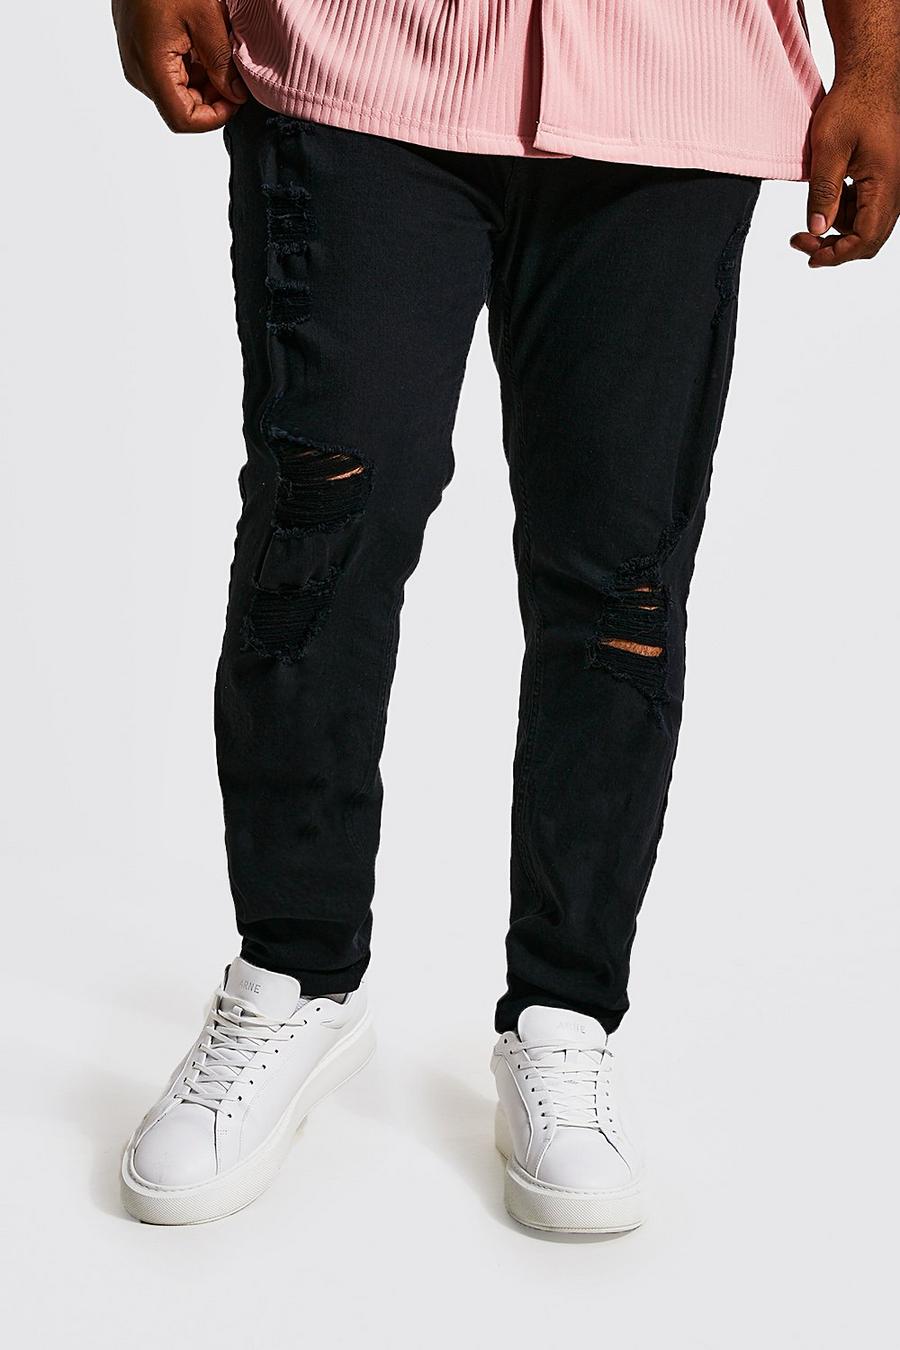 שחור אמיתי ג'ינס סופר סקיני עם קרעים מרובים, מידות גדולות